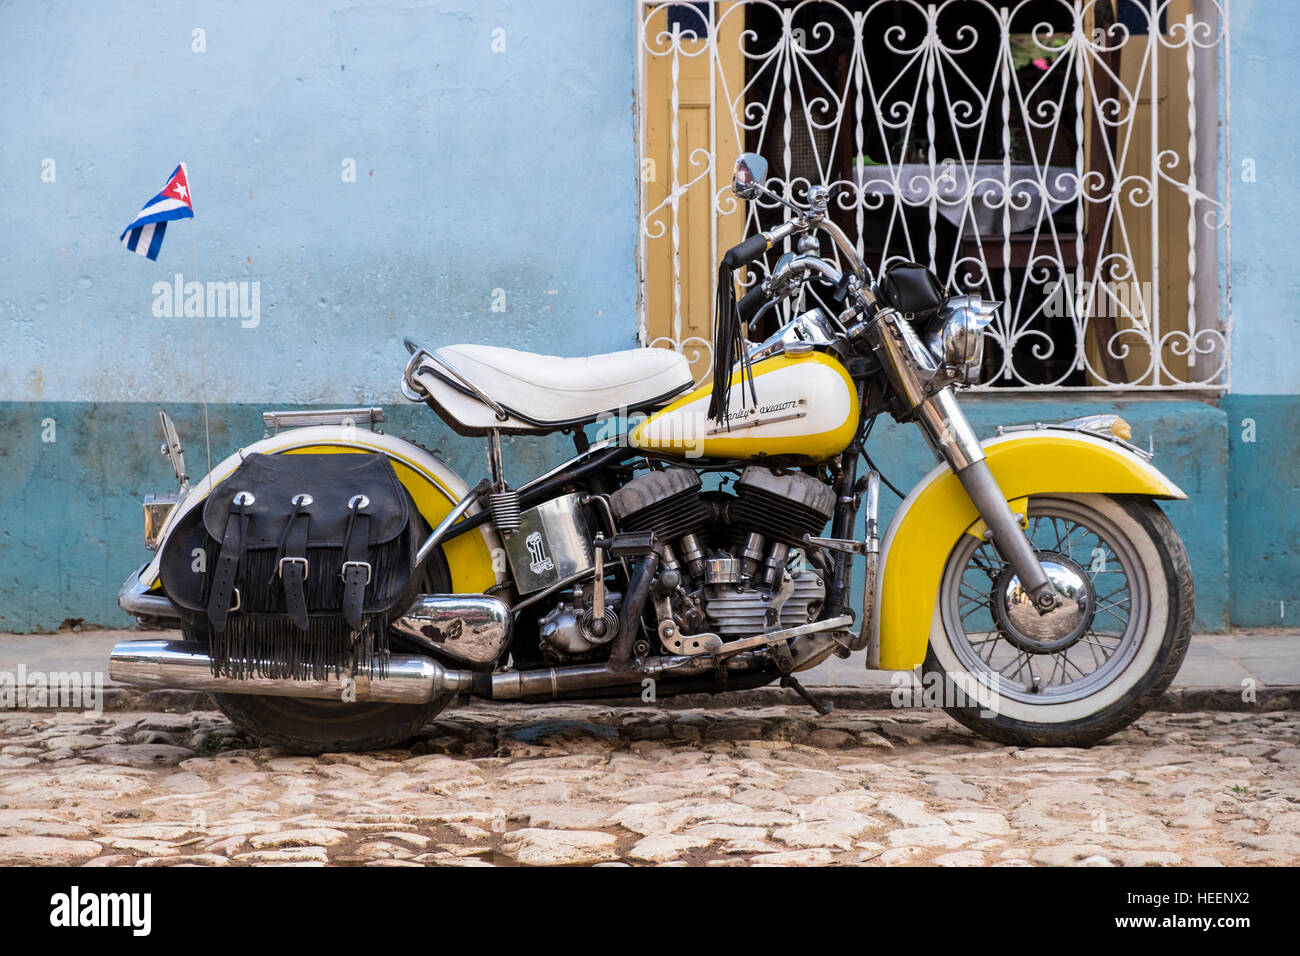 Moto Harley Davidson à partir des années 1950, stationné à Trinidad, Cuba Banque D'Images